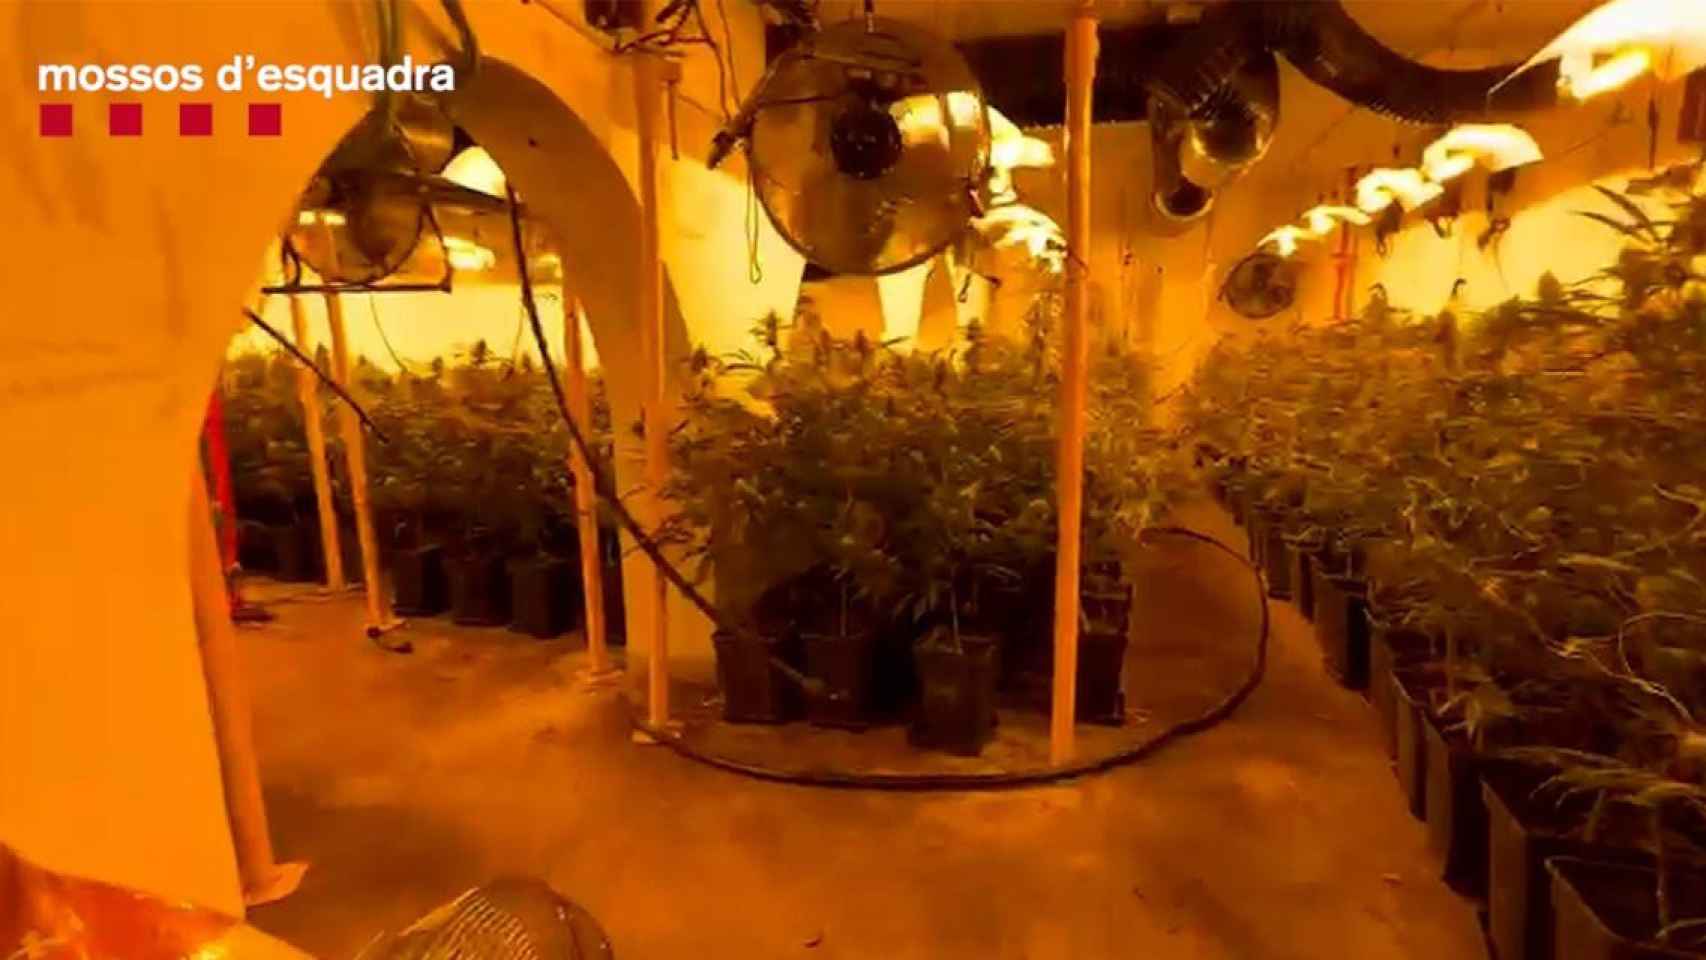 La plantación de marihuana que se intervino en el sótano, con 1.122 plantas / MOSSOS